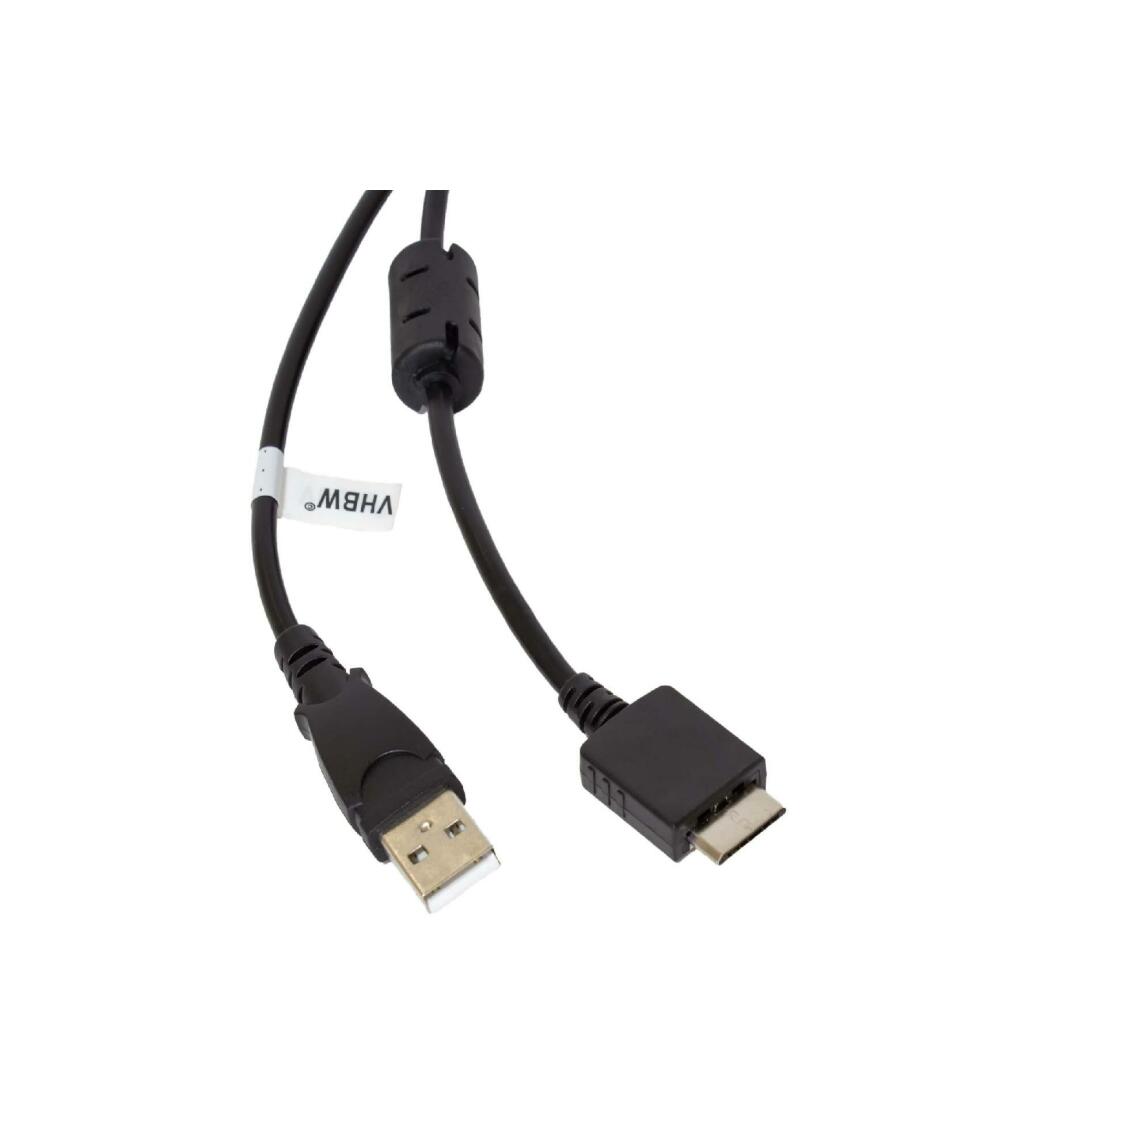 Vhbw - vhbw câble de données USB (type A sur lecteur MP3) câble de chargement remplace Sony WMC-NW20MU pour lecteur MP3 - noir, 150cm - Alimentation modulaire